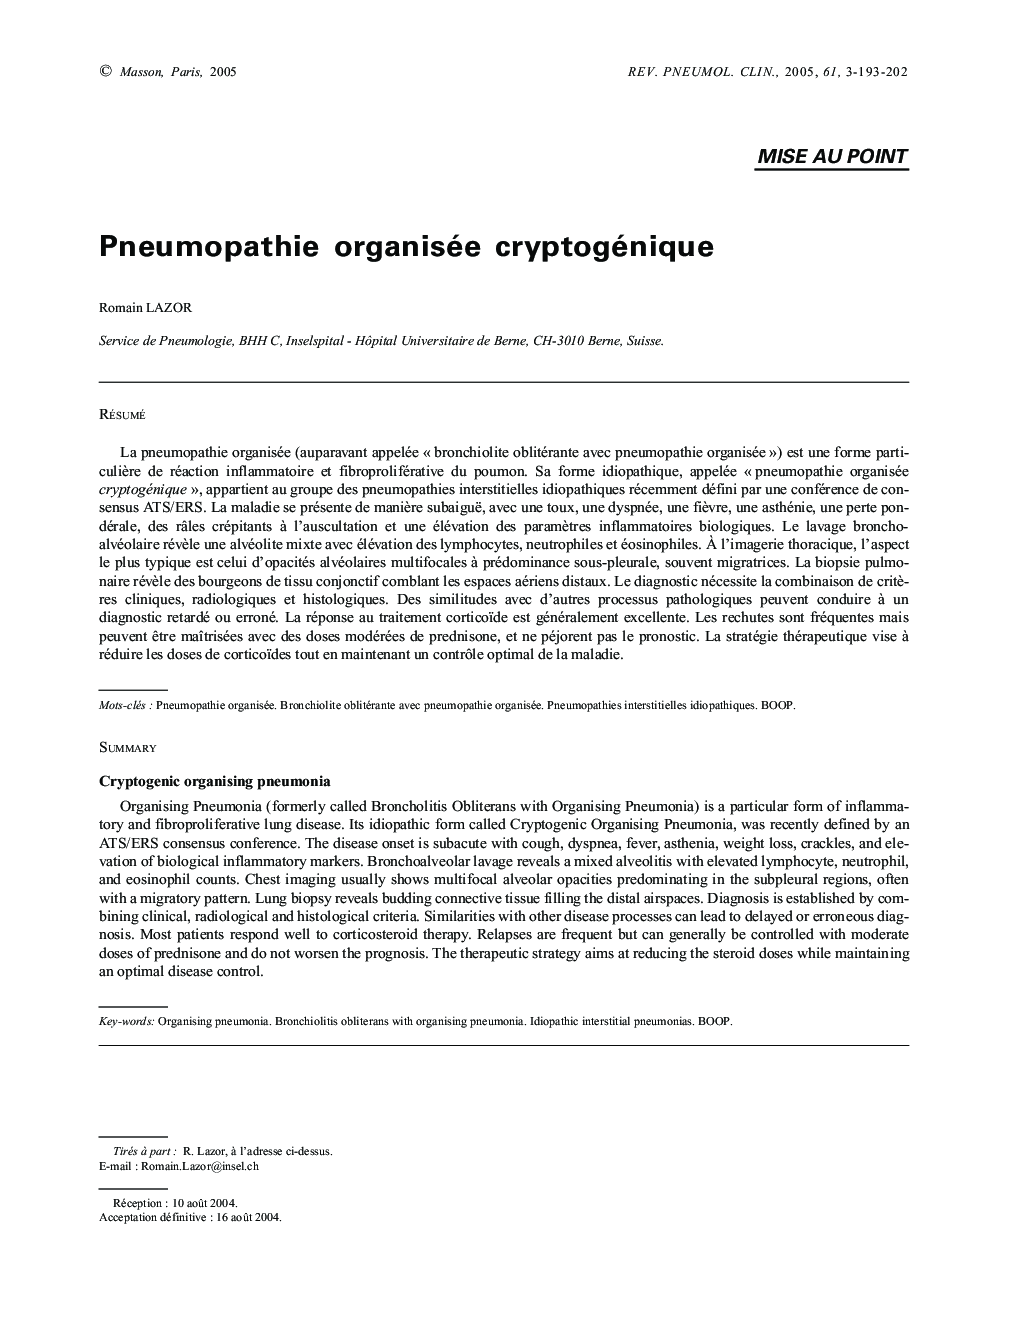 Pneumopathie organisée cryptogénique